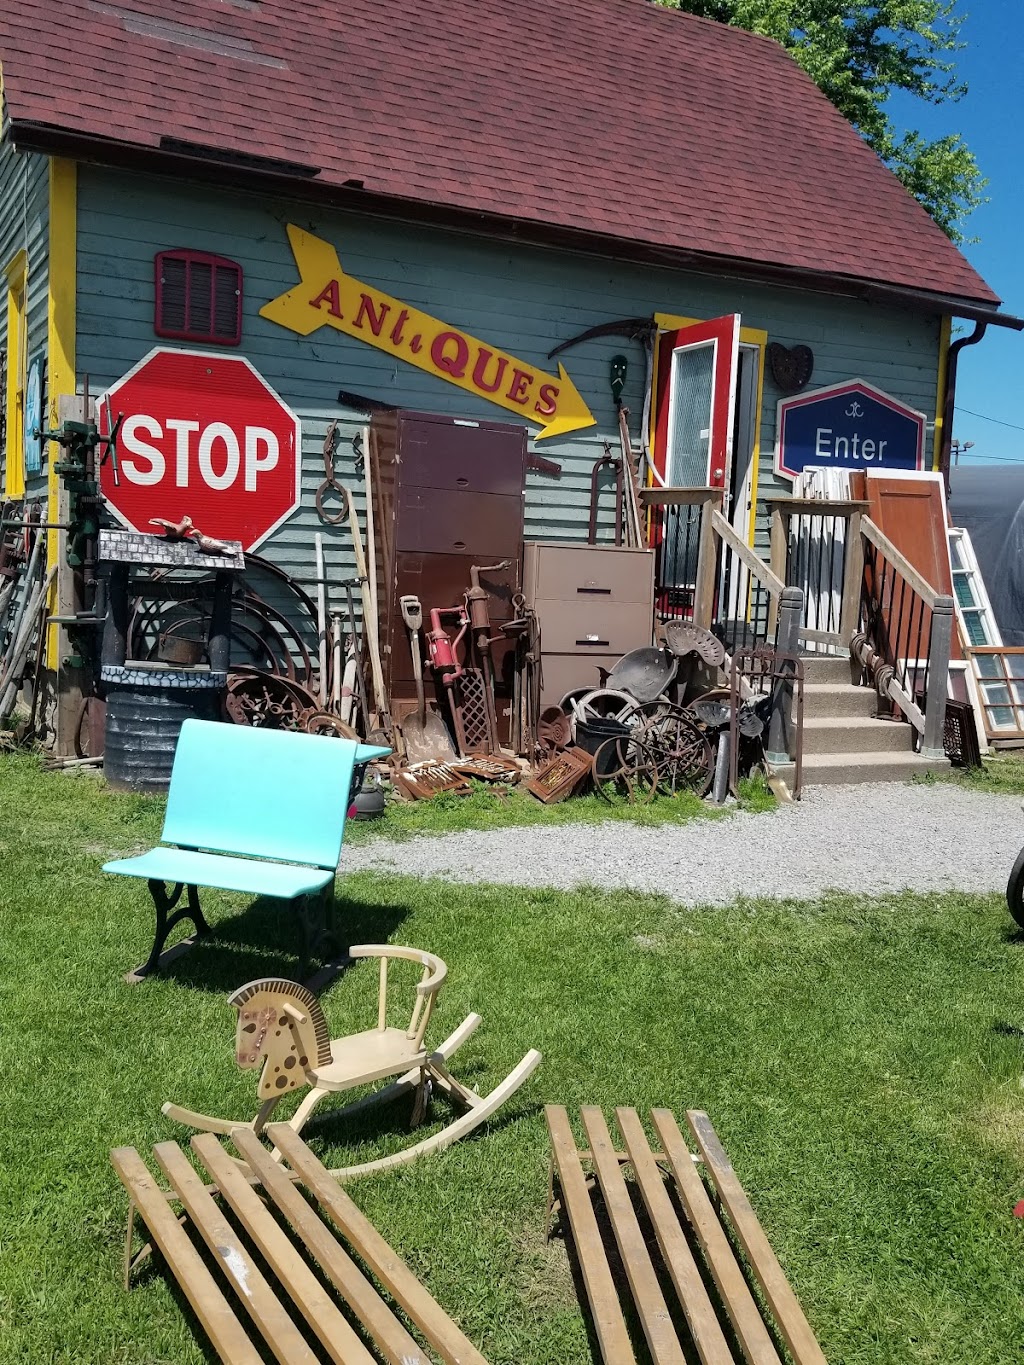 Prudhommes Antique & Vintage Market | 3125 N Service Rd, Vineland Station, ON L0R 2E0, Canada | Phone: (905) 562-5187